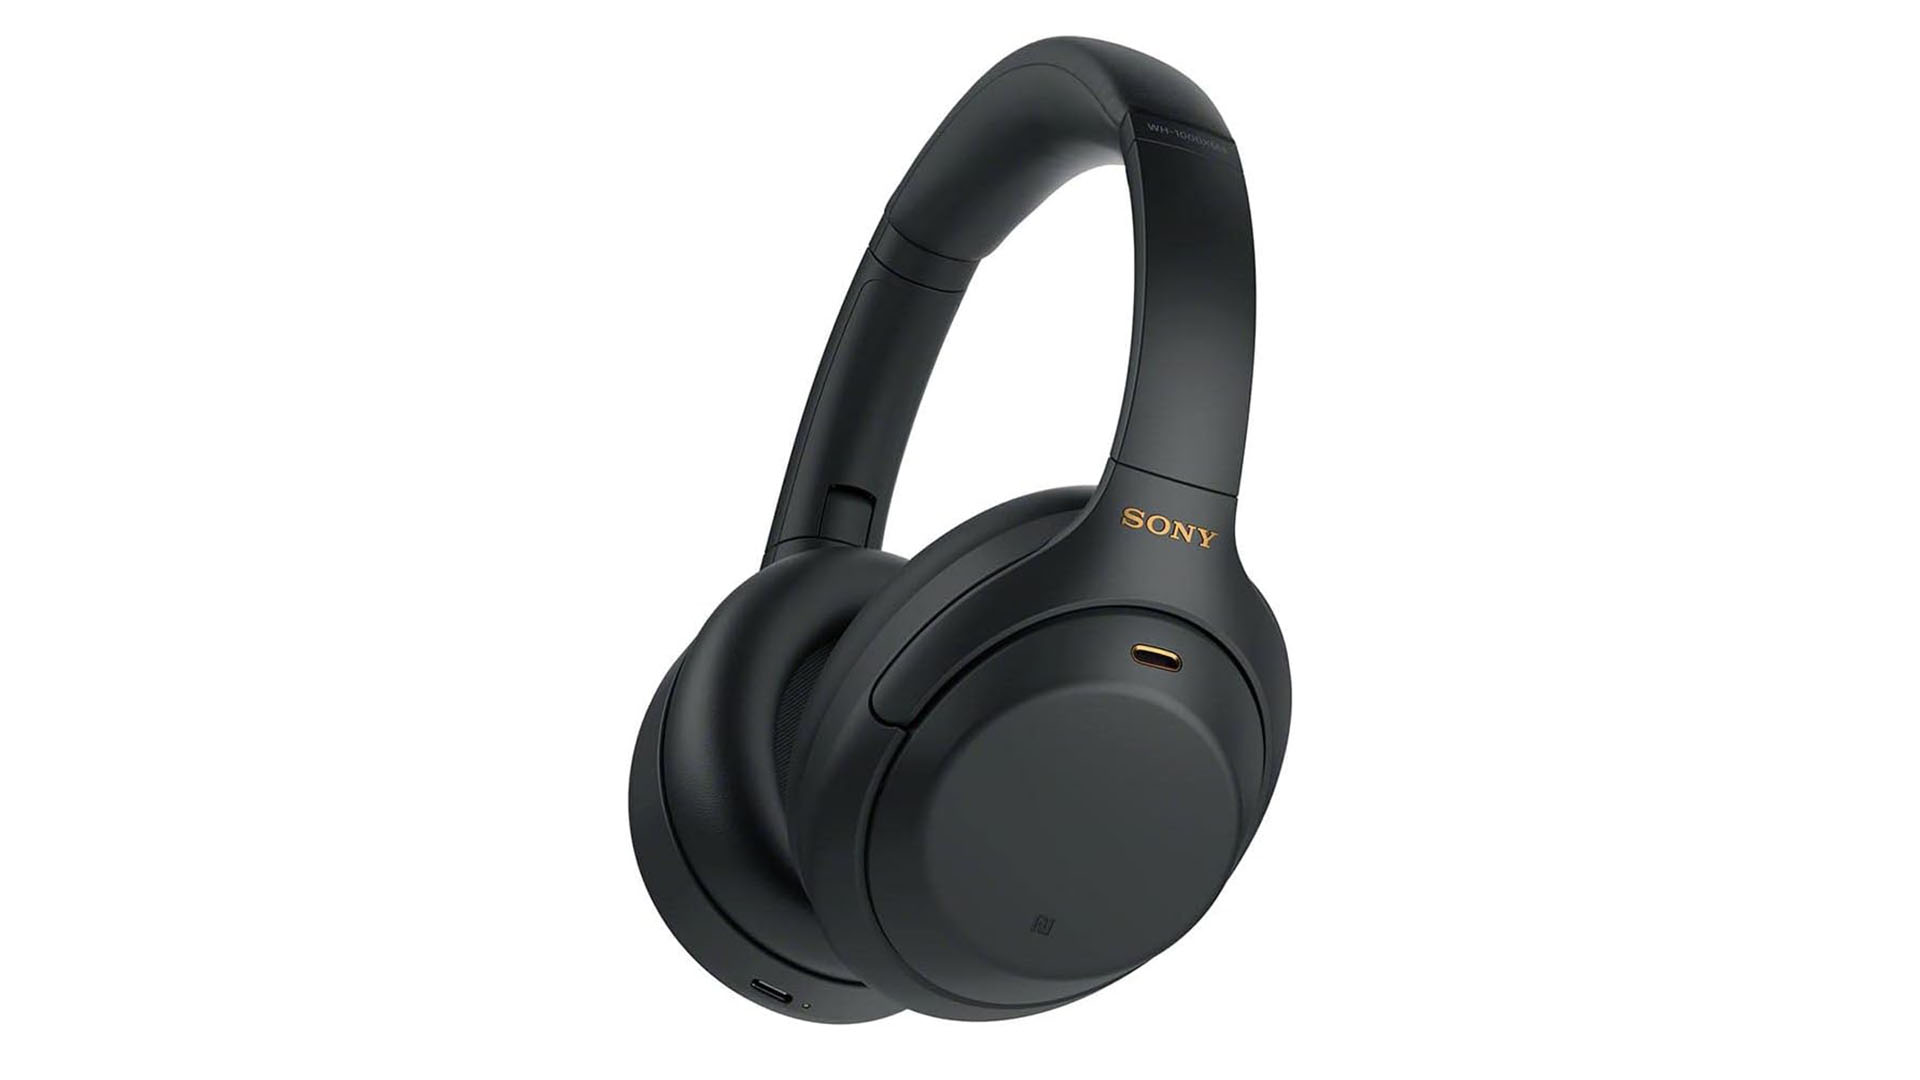 Sony WH-1000XM4 Wireless Premium Noise Canceling Overhead Headphones